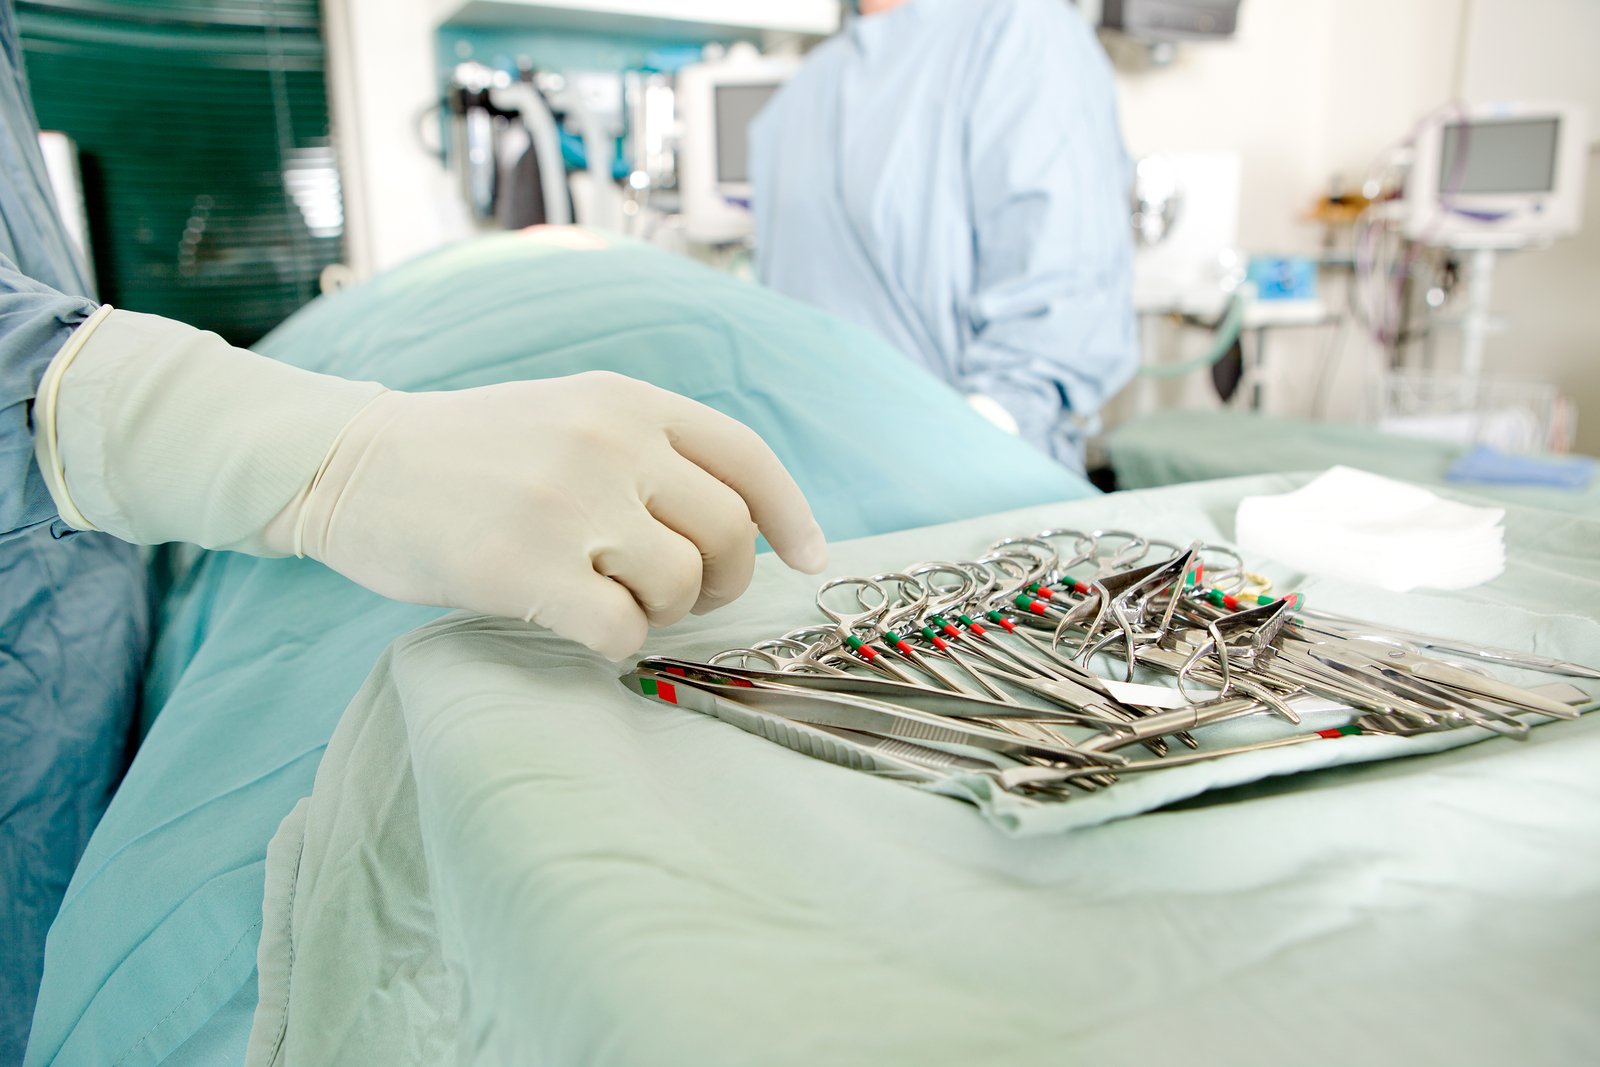 Конечный исход операции зависит от поведения пациента в послеоперационный период